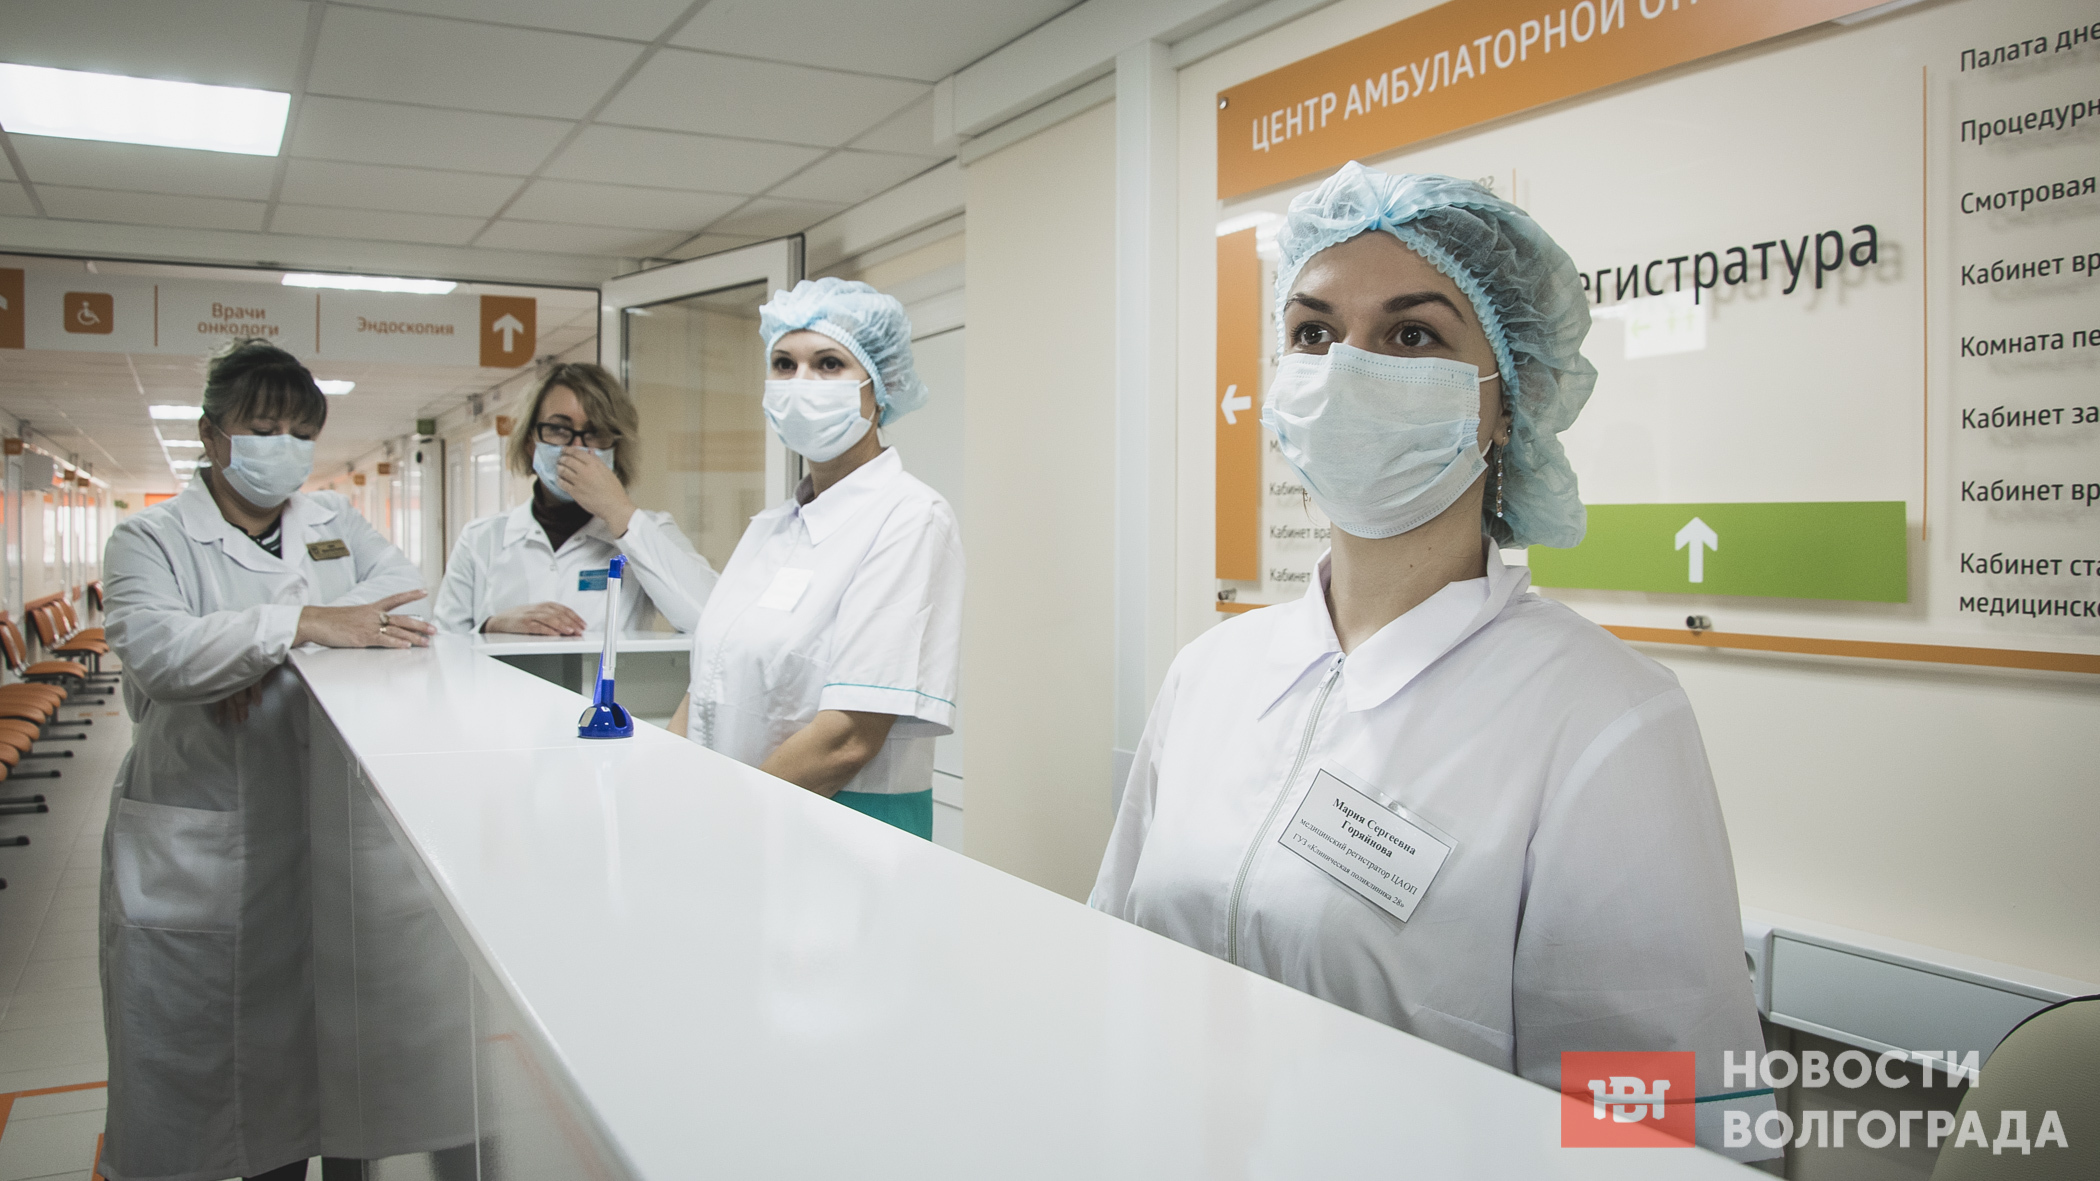 В Волгограде открылись новые центры амбулаторной онкологической помощи